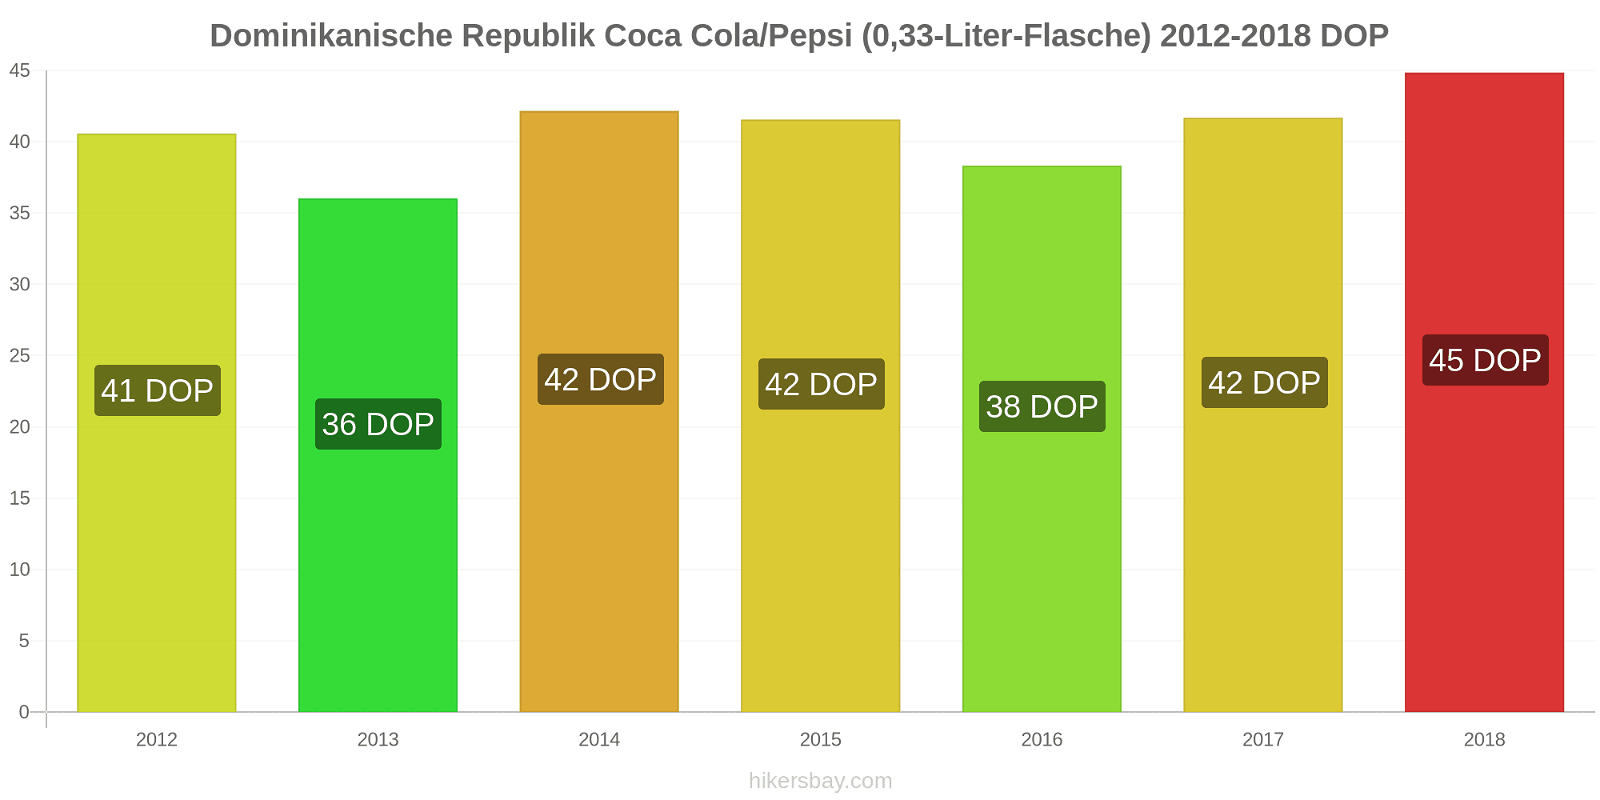 Dominikanische Republik Preisänderungen Coke/Pepsi (0,33-Liter-Flasche) hikersbay.com